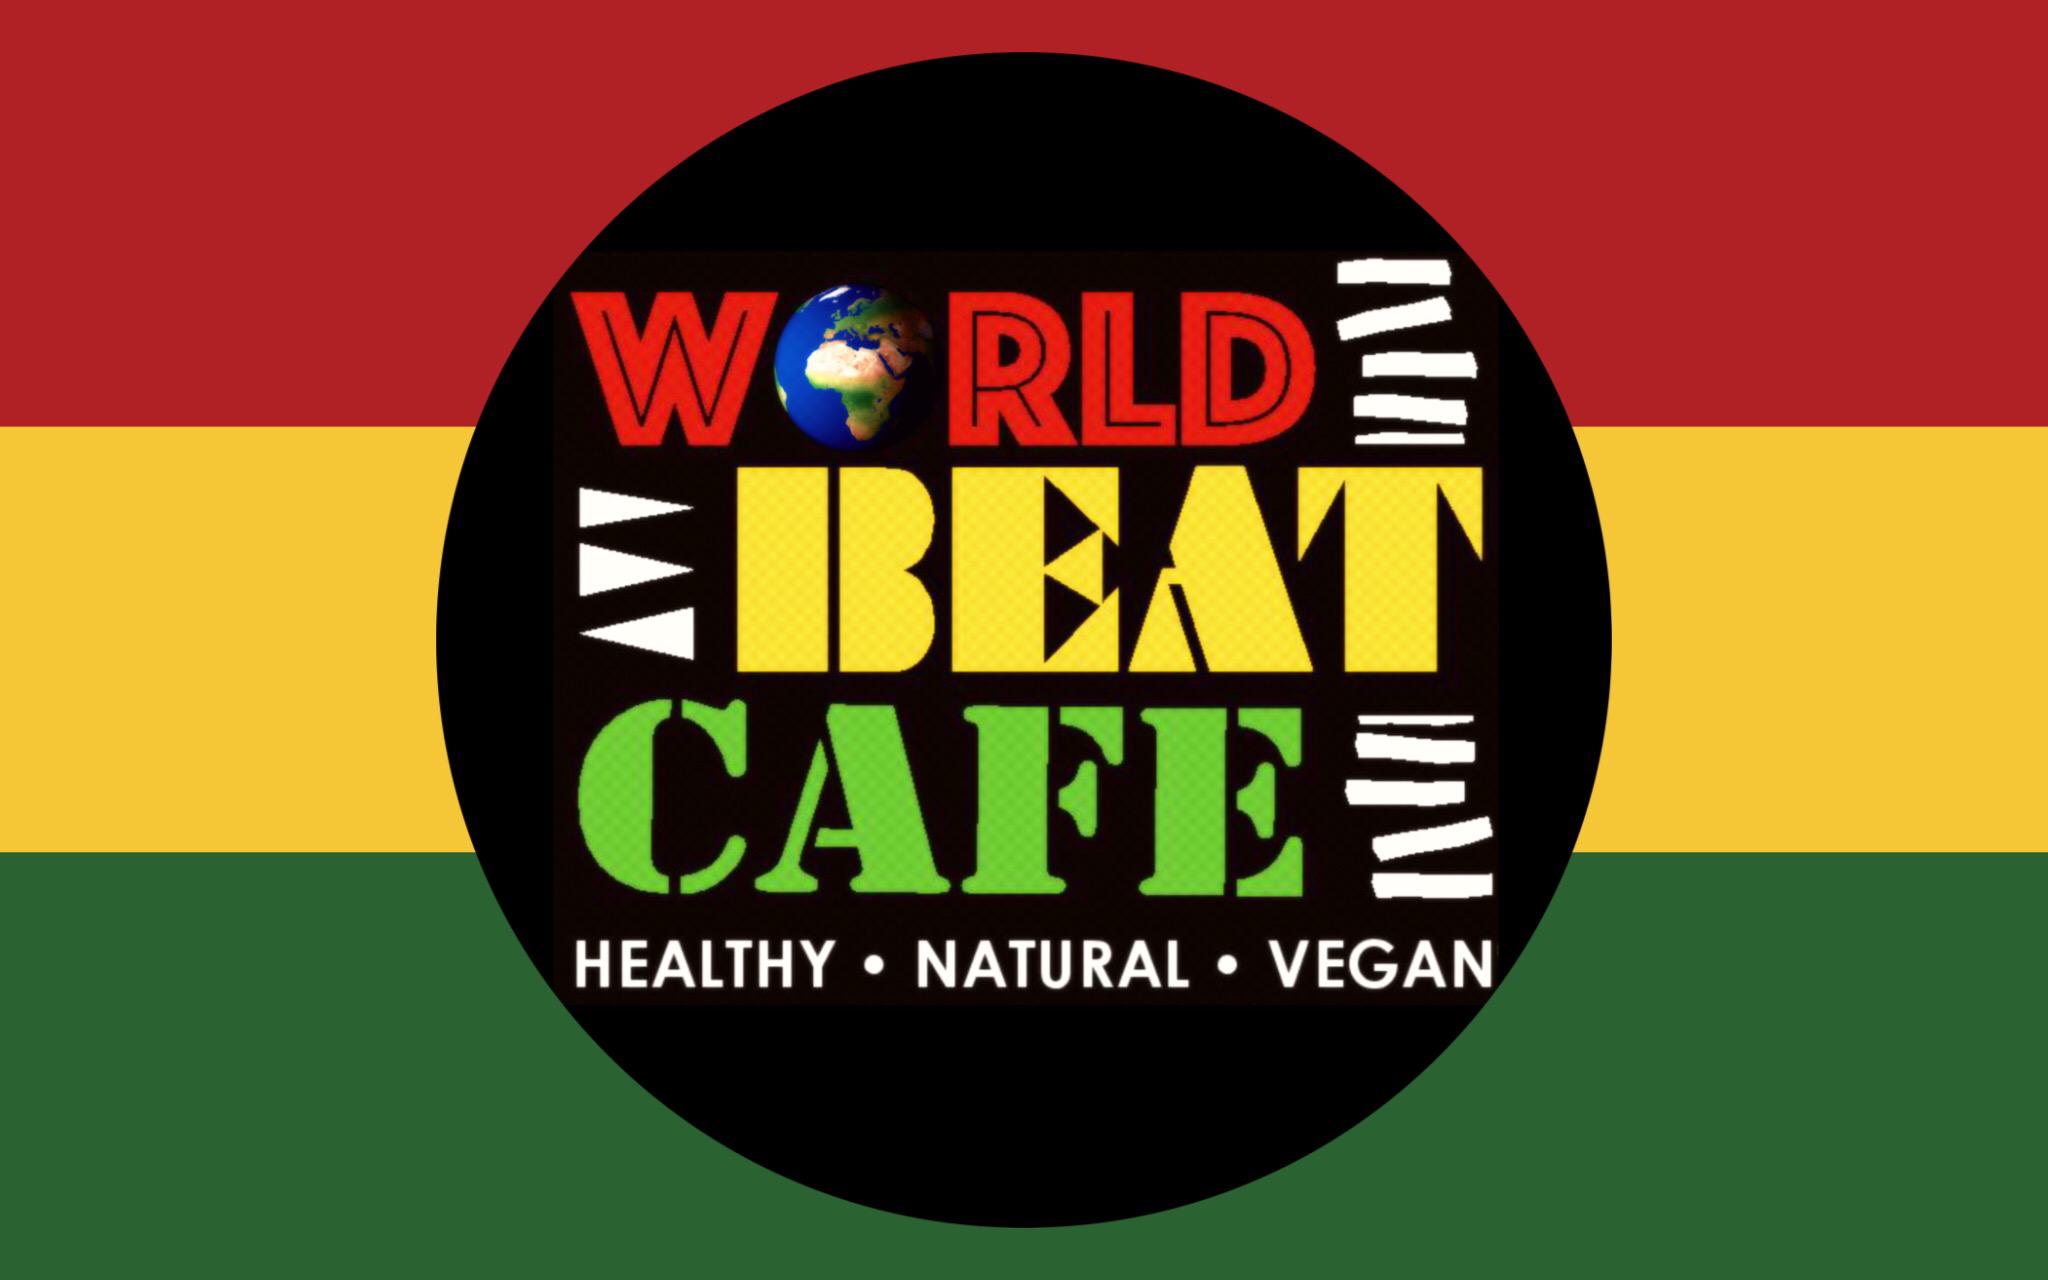 WorldBeat Cafe